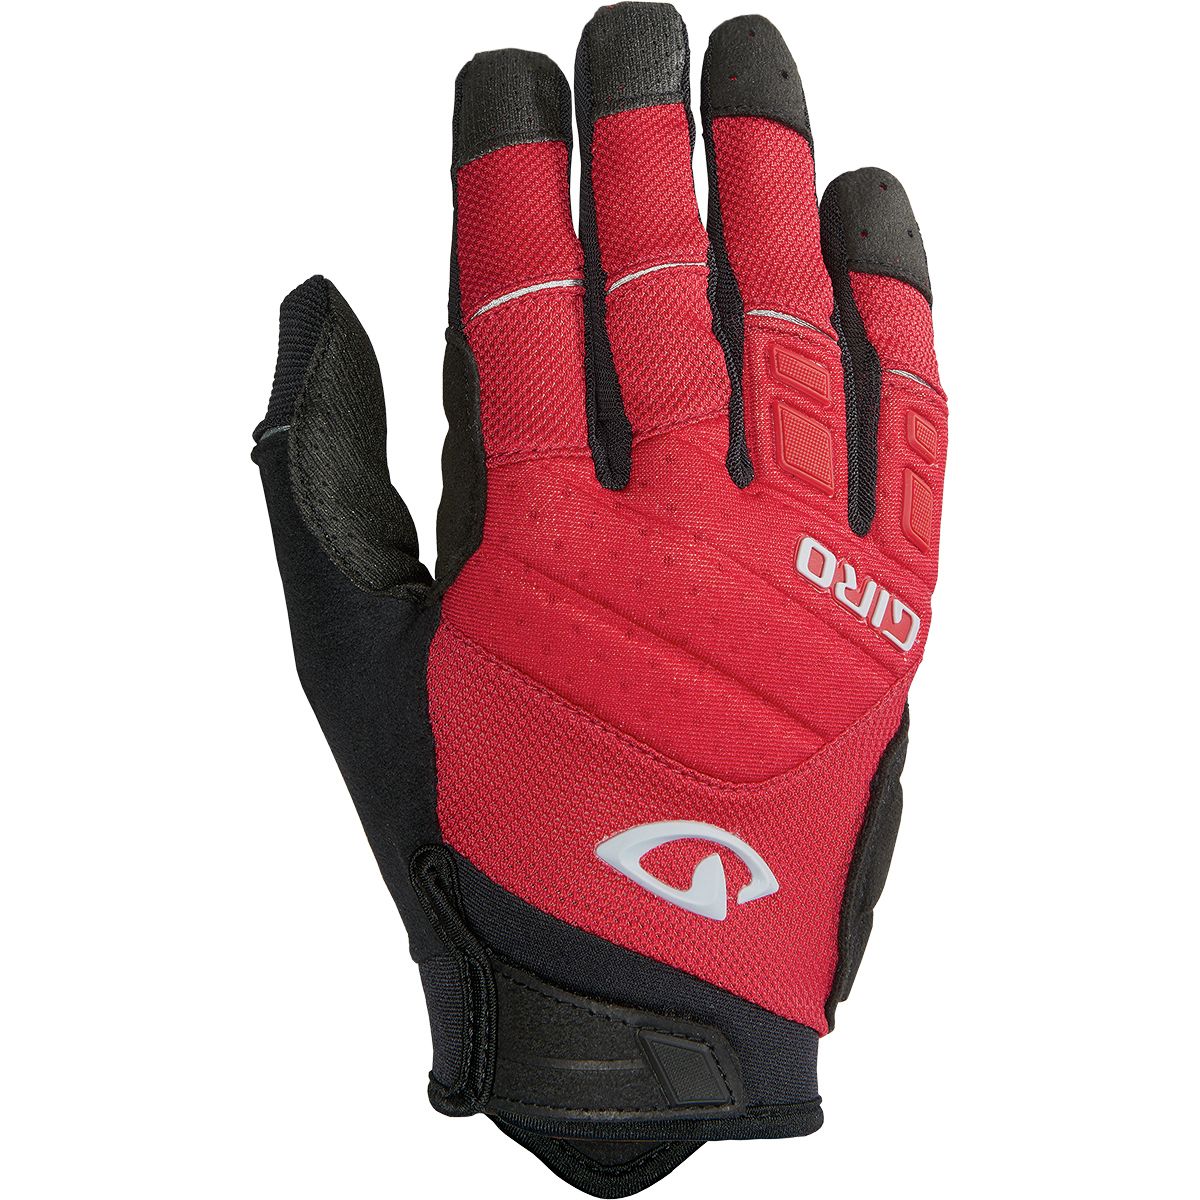 Giro Xen Glove - Men's